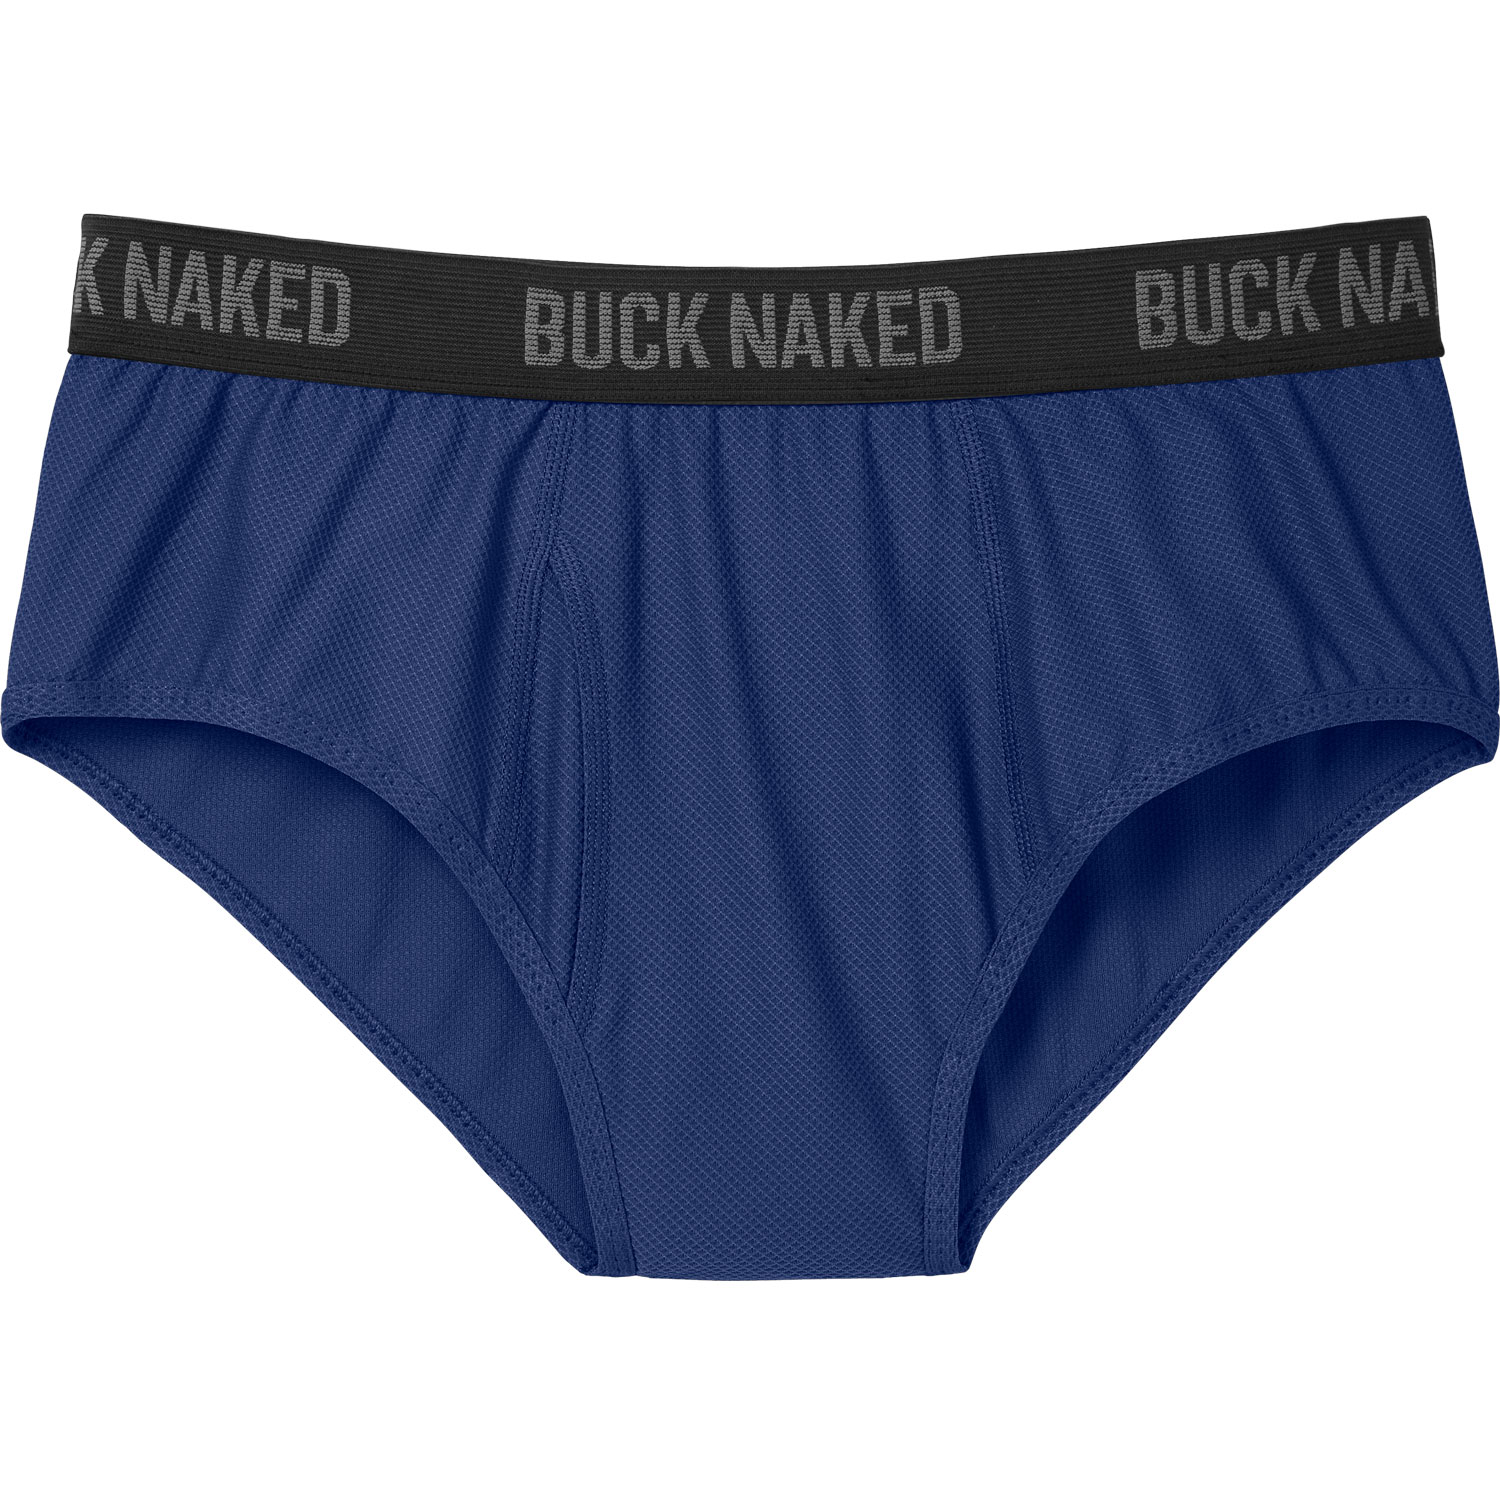 Duluth Trading Company Buck Naked Underwear TV Spot, 'Symphony